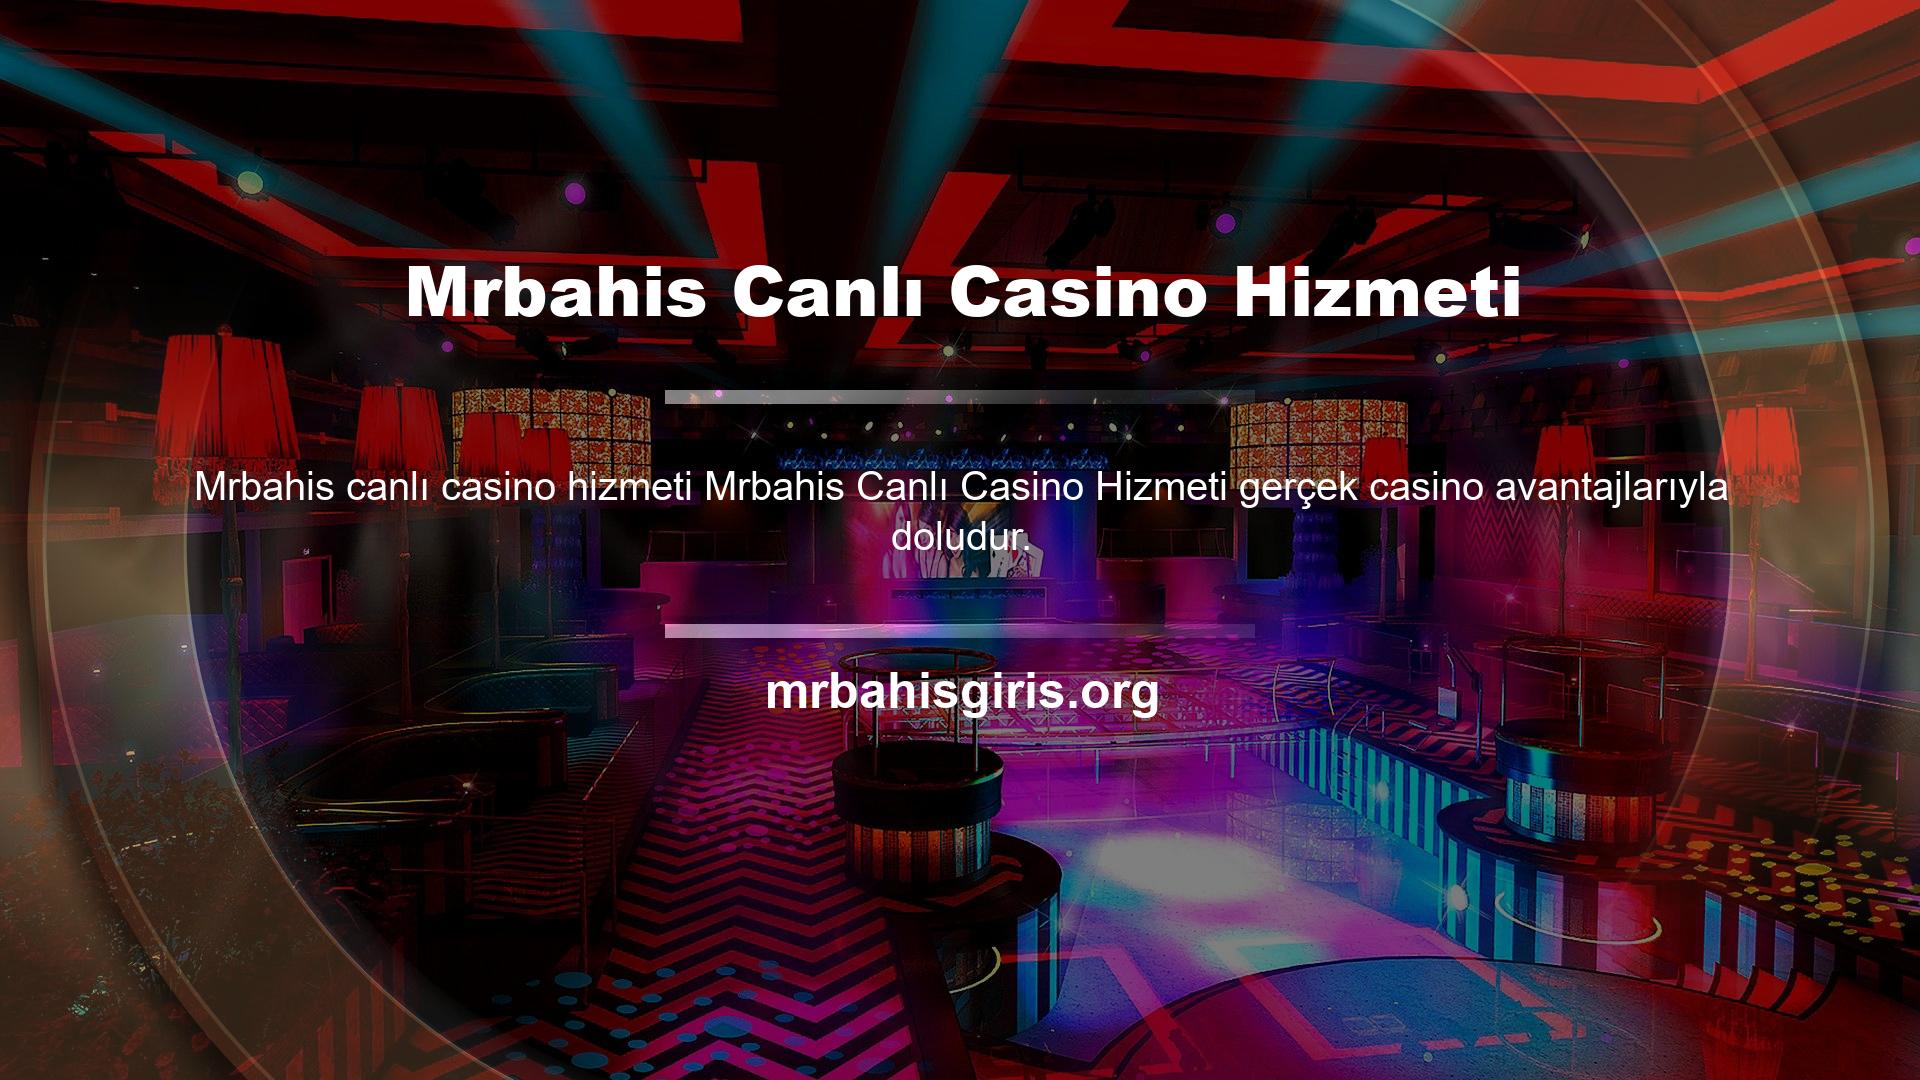 Mrbahis canlı casino hizmet platformu Avrupa ve ülkemde mevcut olup spor bahisleri ve canlı bahislerle sınırlı değildir